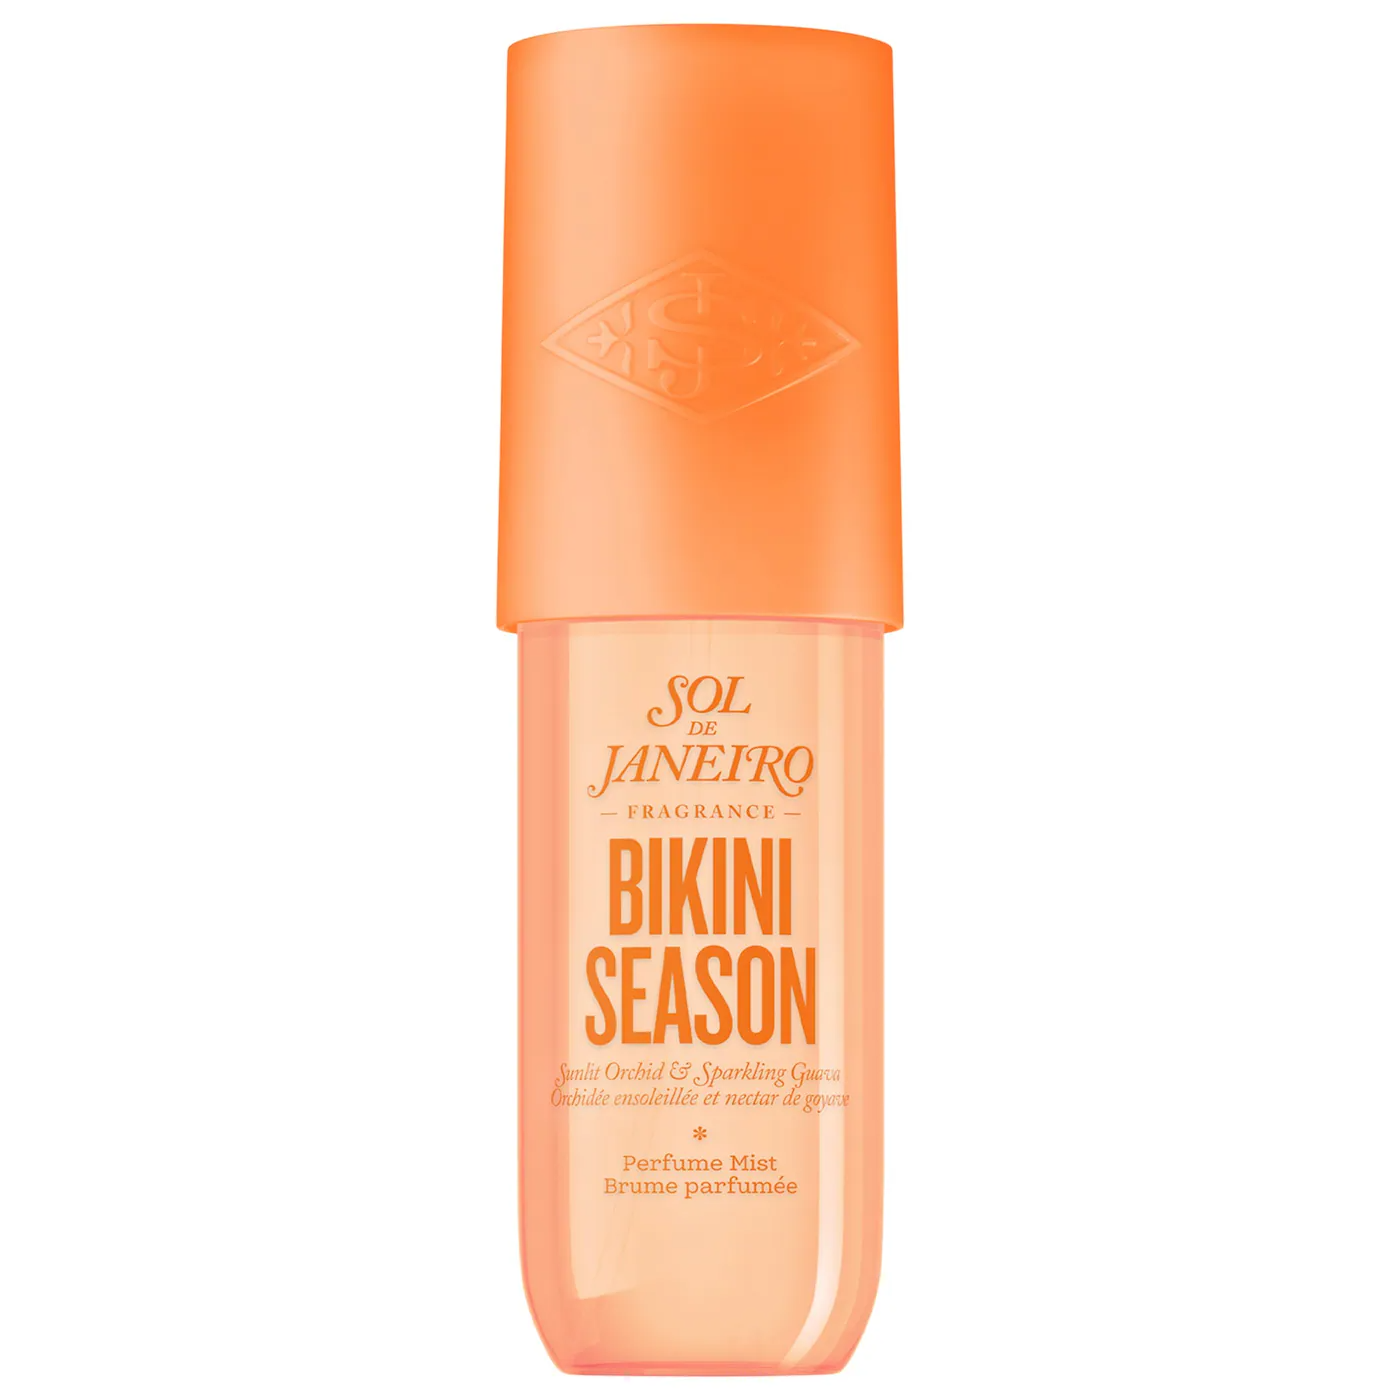 Sol De Janeiro Bikini Season Perfume Mist, 90mL